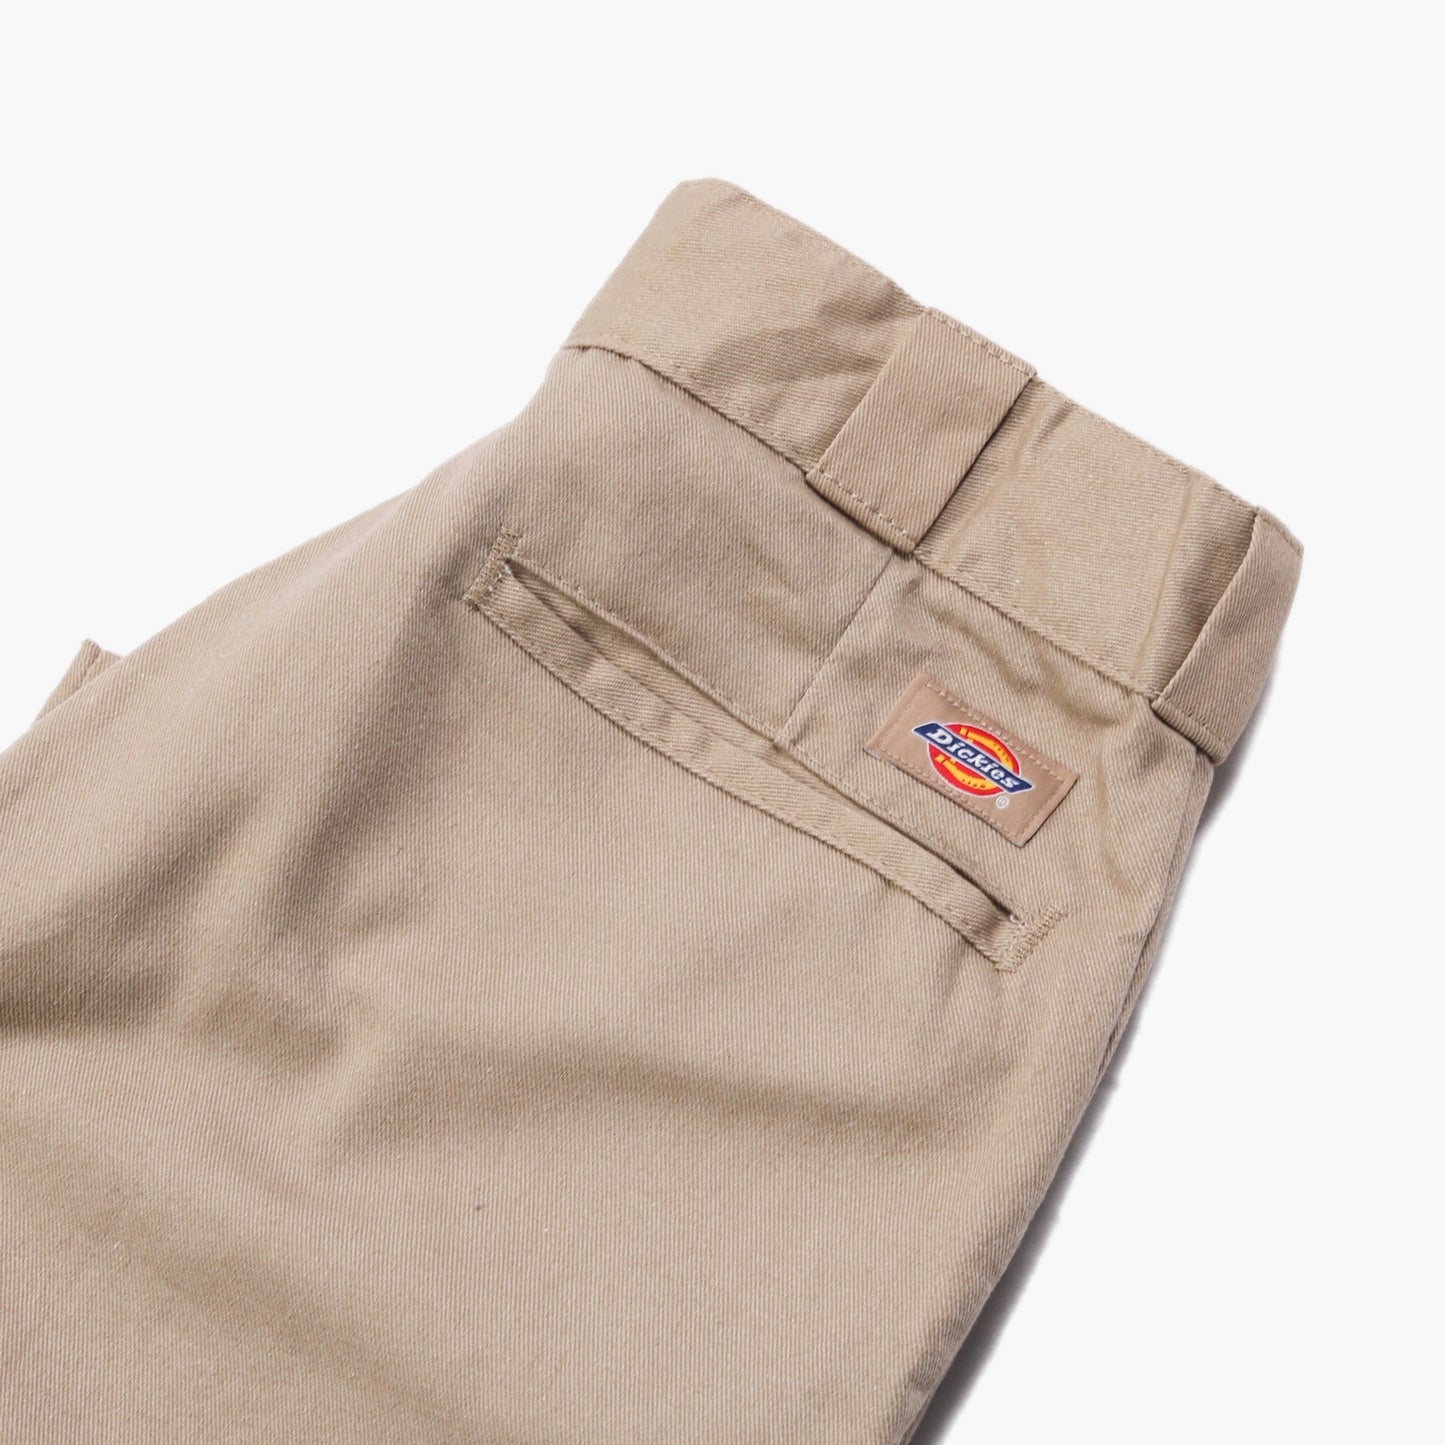 Dickies Original 874 Work Trousers - Khaki - 29/30 - American Madness